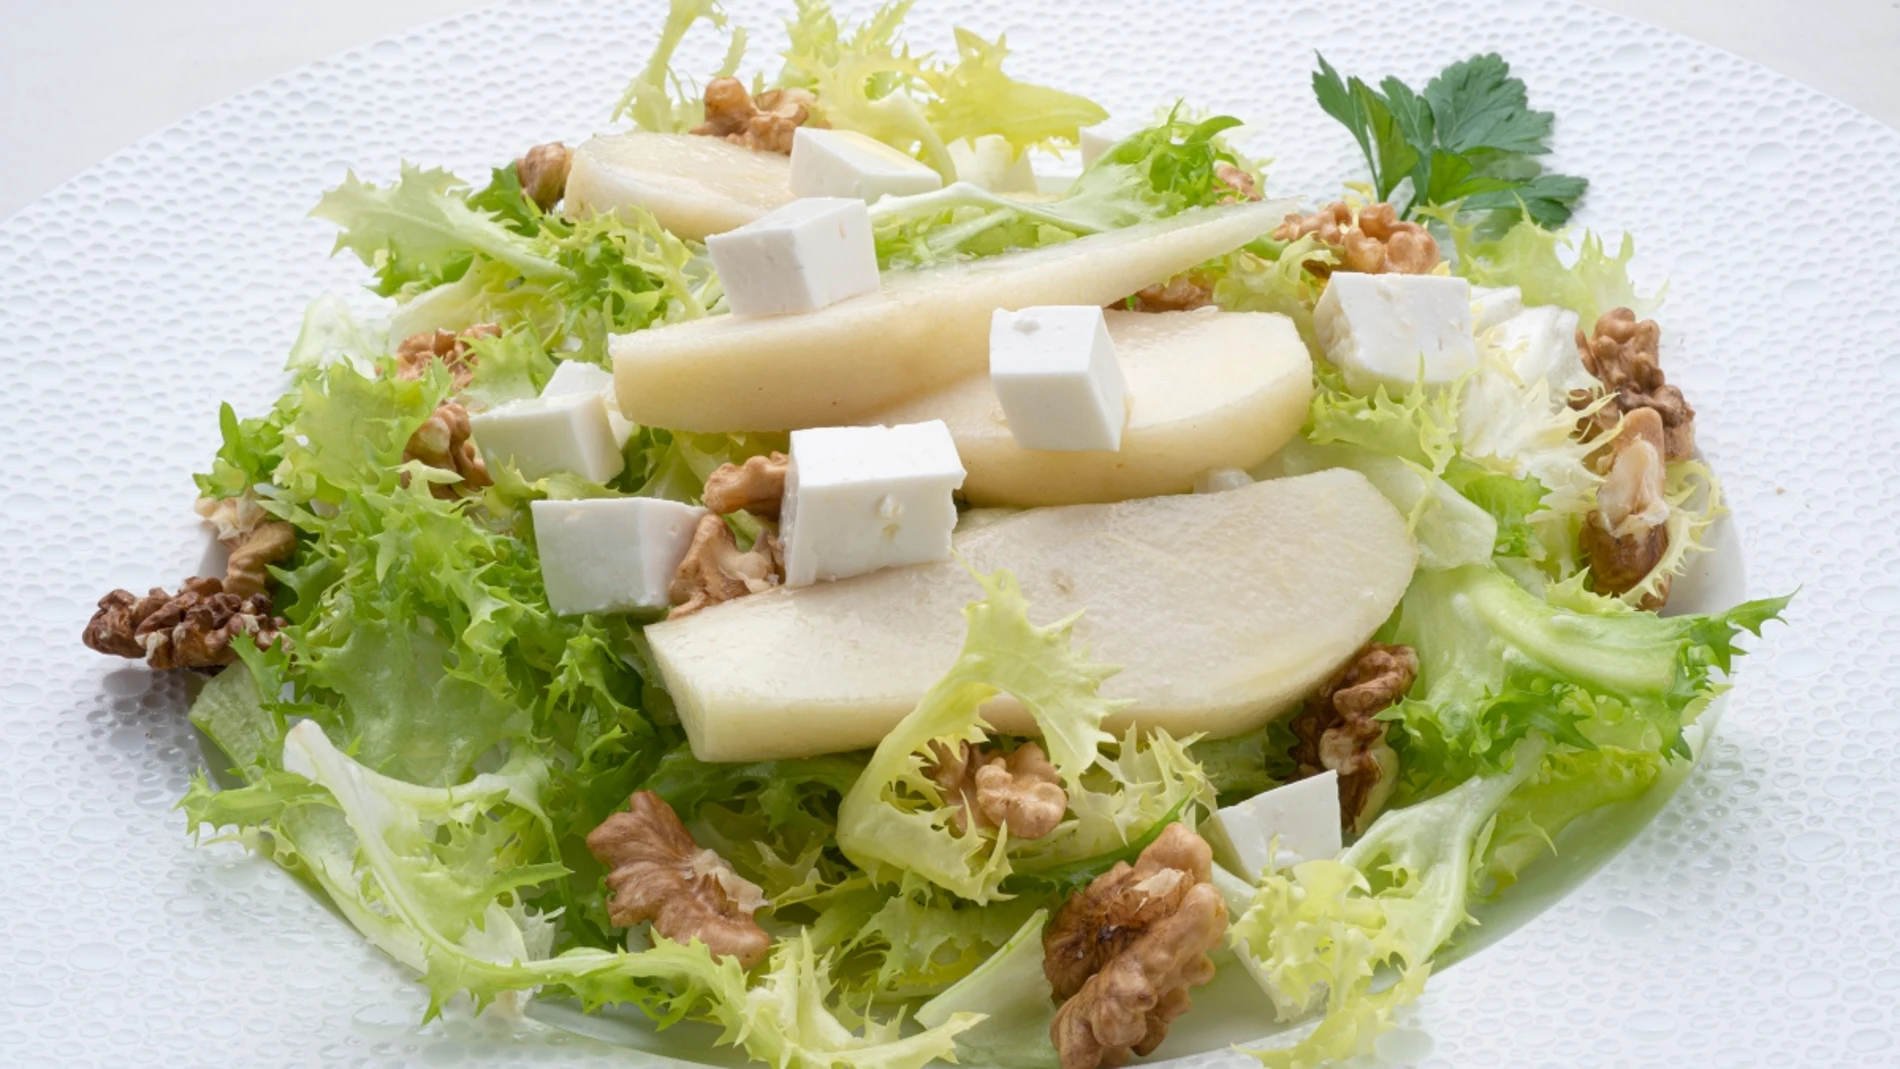 Ensalada de escarola, pera y queso fresco, de Karlos Arguiñano